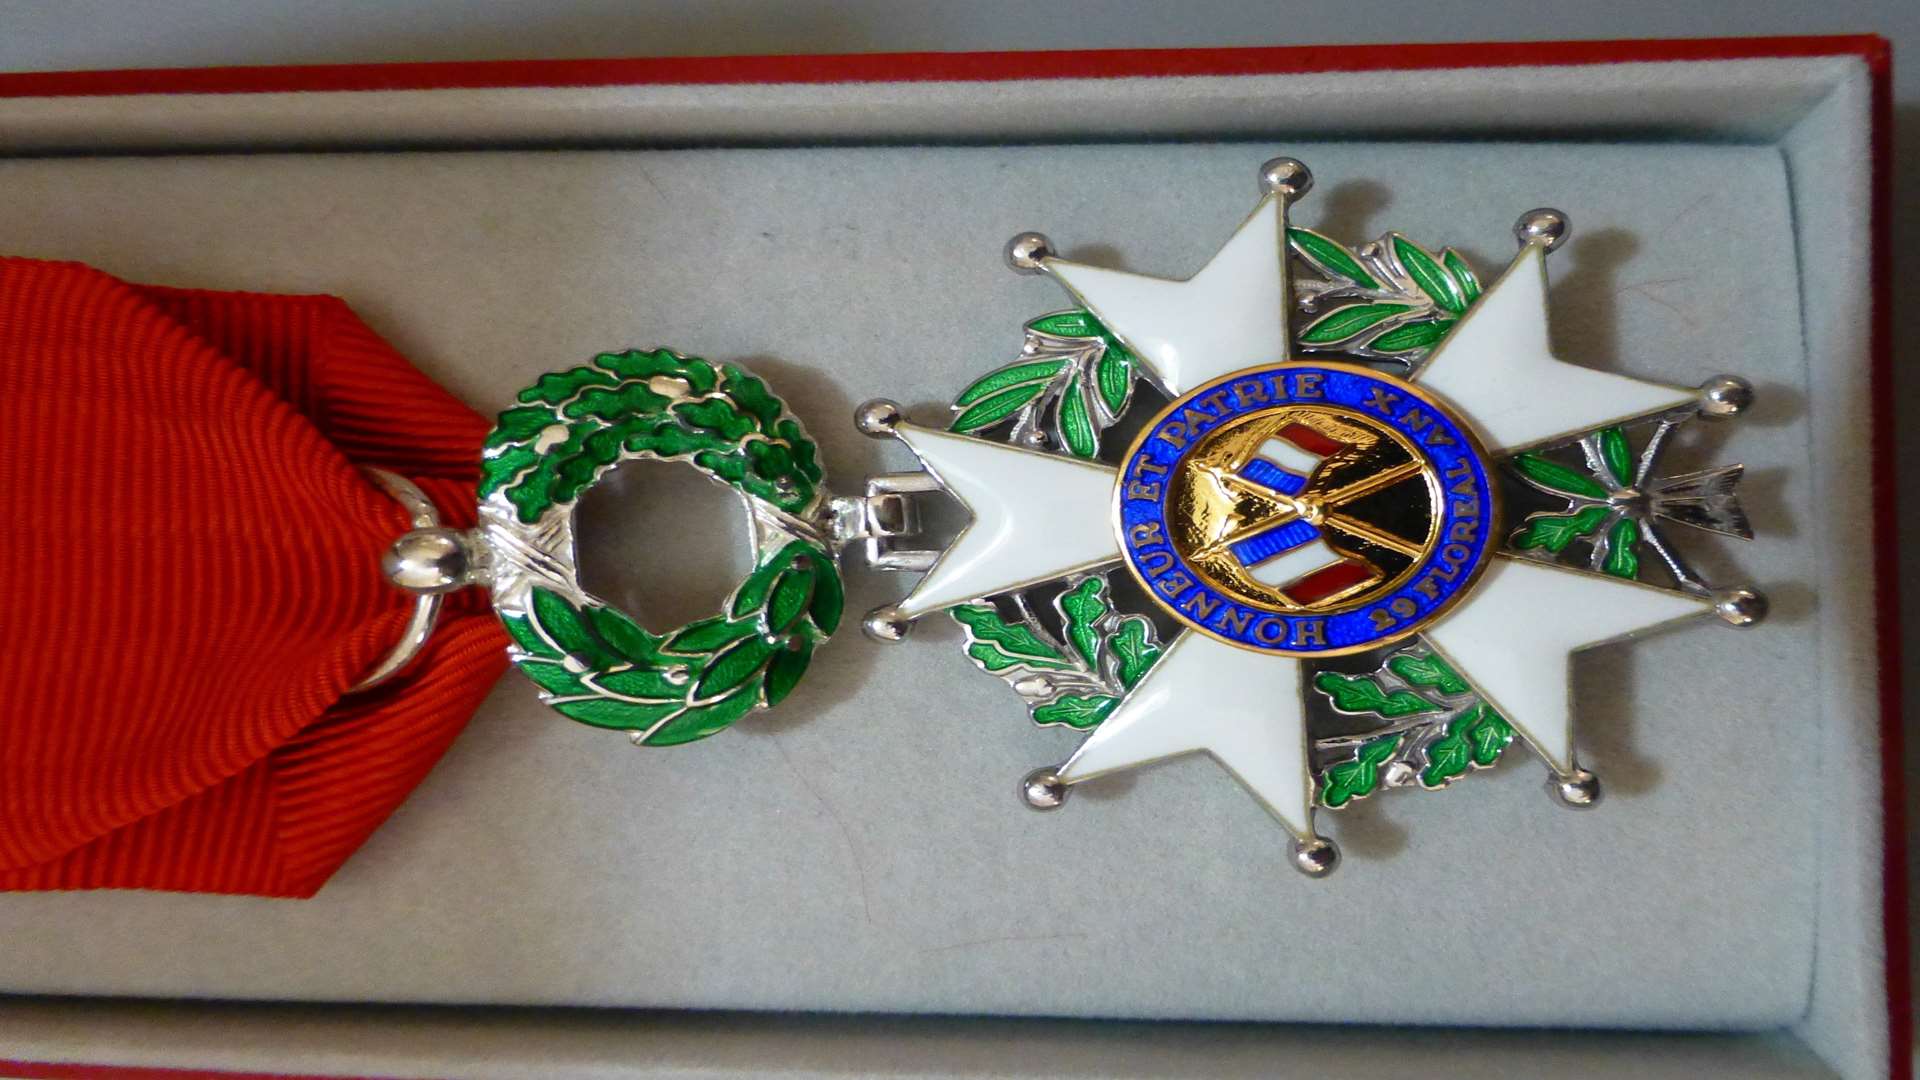 Stanley's Insignia of Chevalier de la Legion d'honneur.